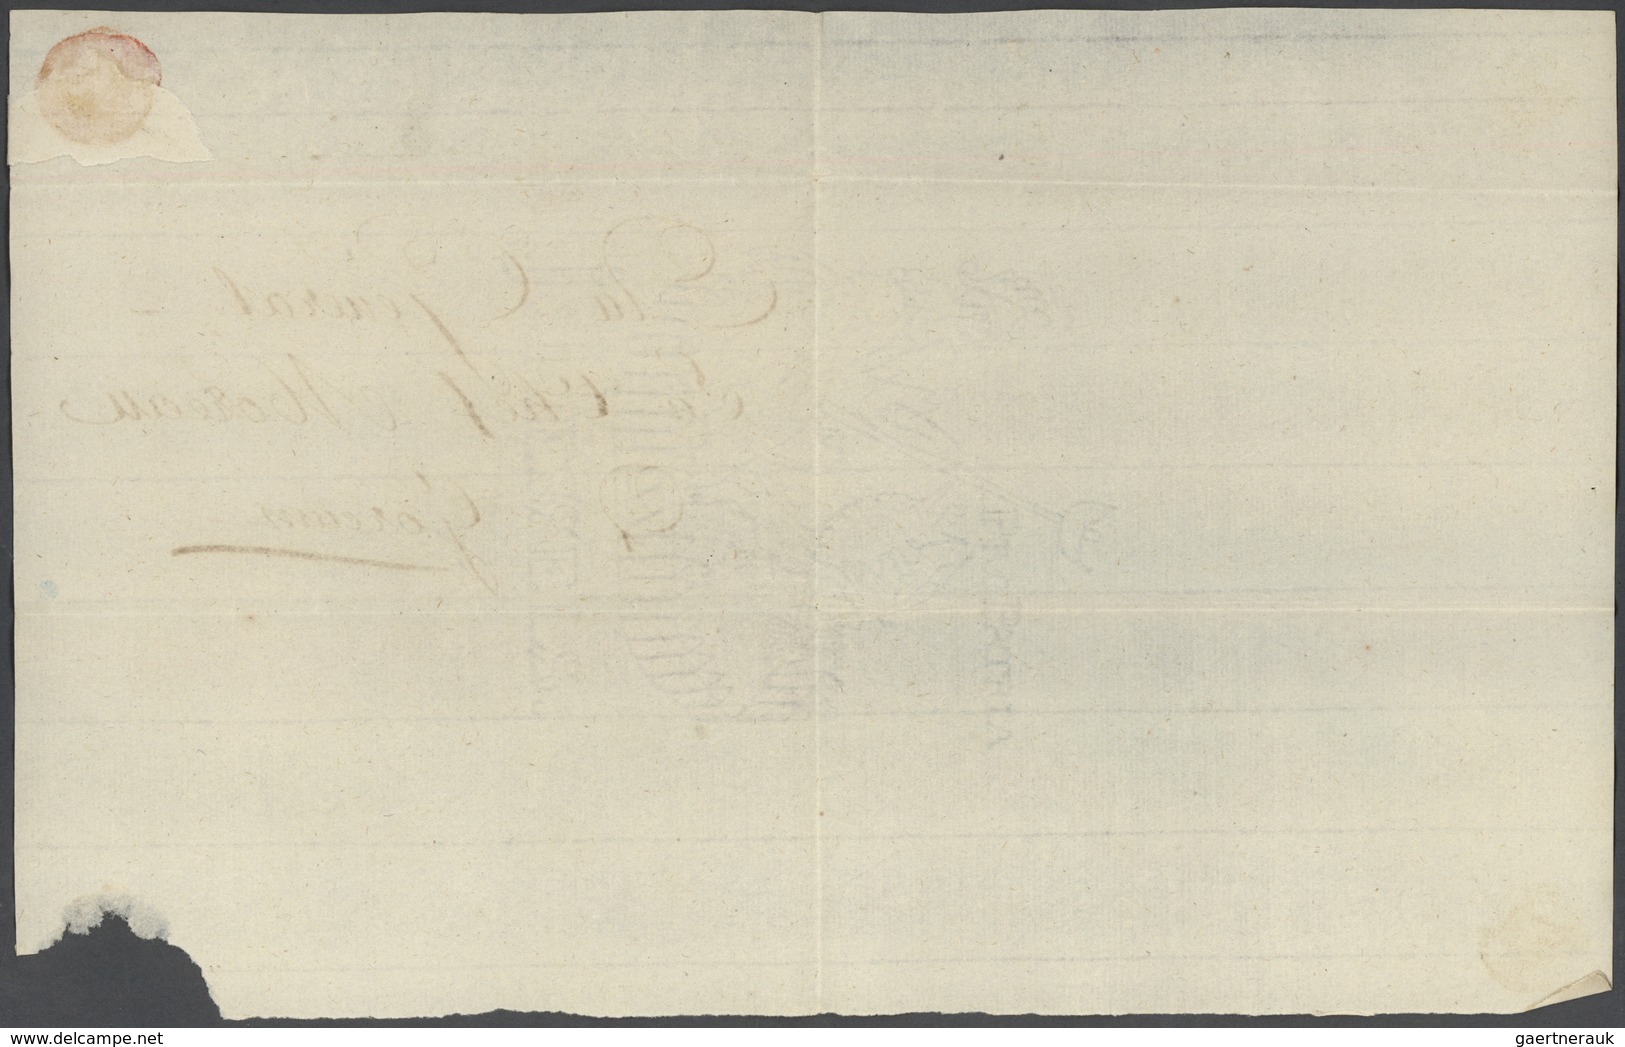 Br Niederlande - Französische Armeepost: 1796, "D.ON. B ARM.S DU NORD", Straight Line In Black On Folde - ...-1850 Voorfilatelie